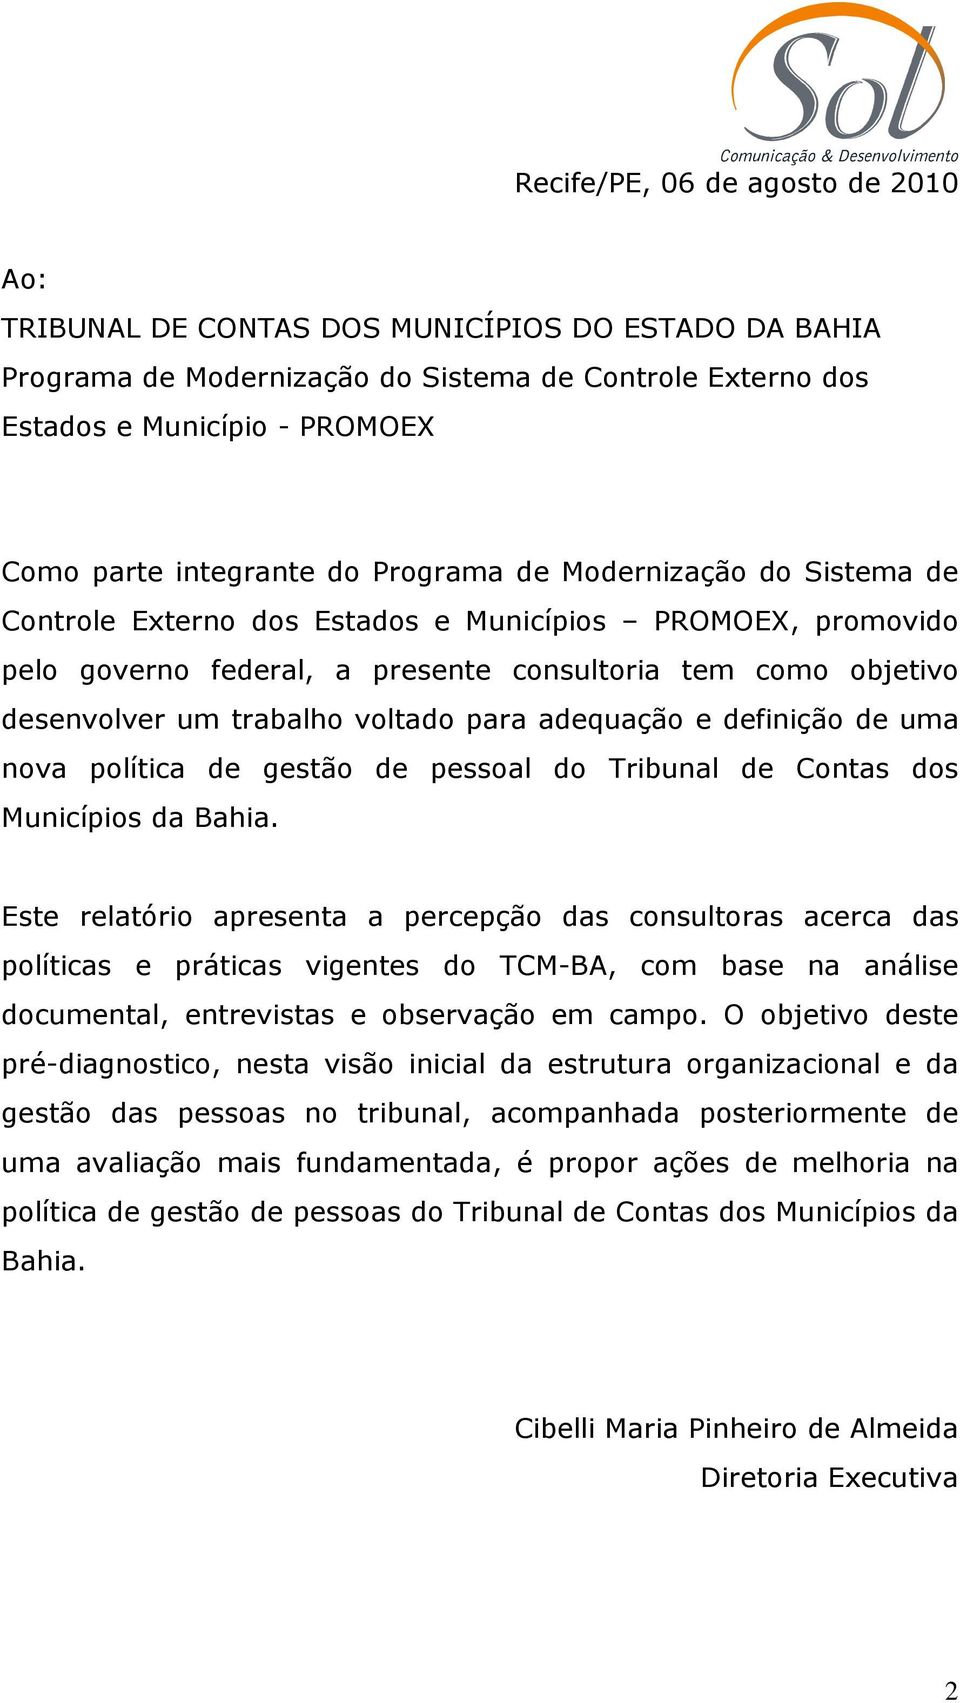 trabalho voltado para adequação e definição de uma nova política de gestão de pessoal do Tribunal de Contas dos Municípios da Bahia.